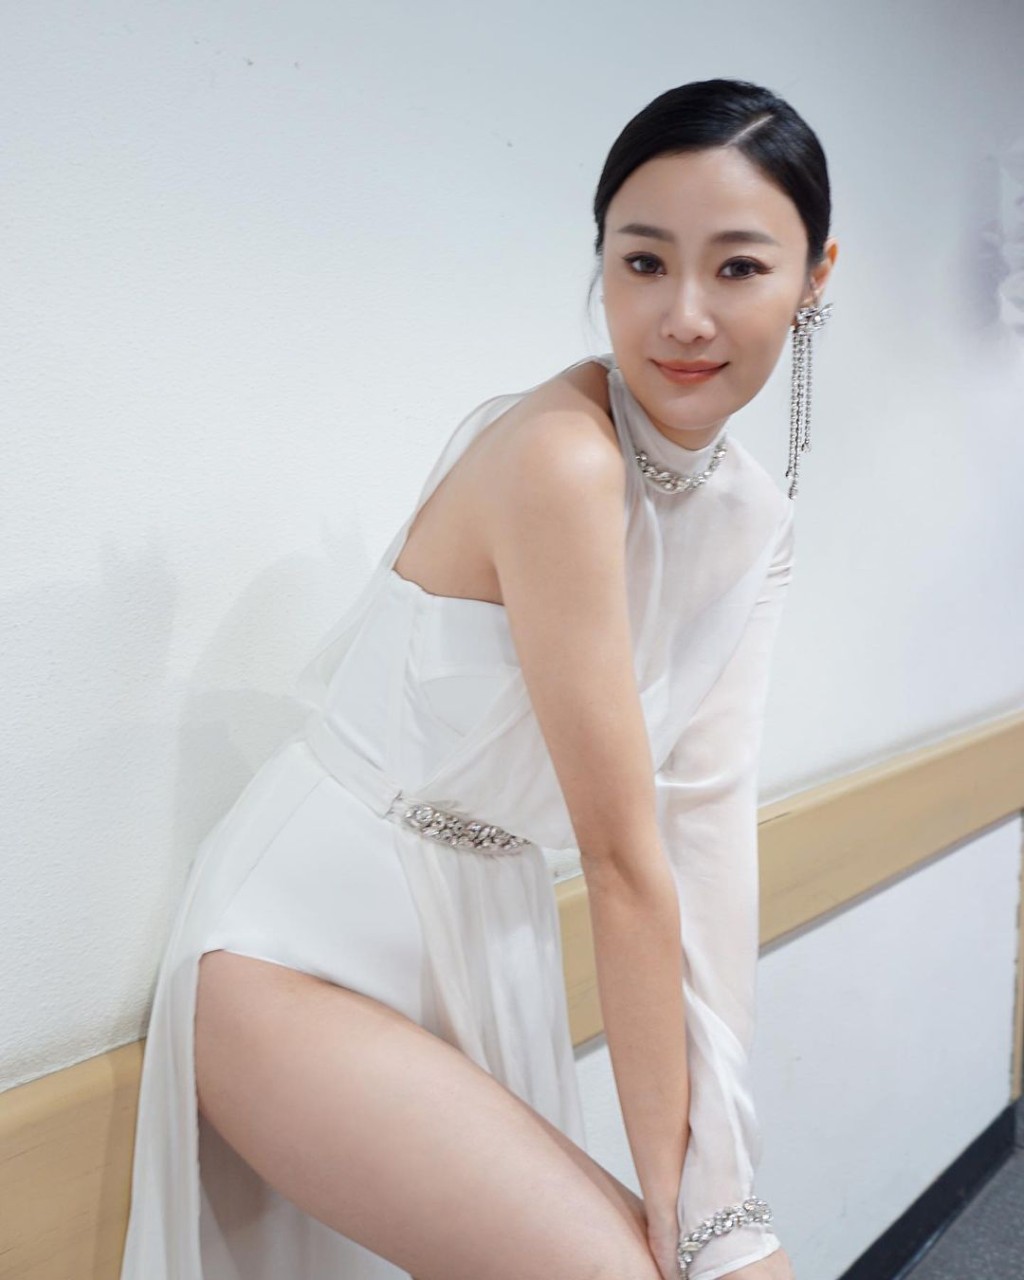 朱智贤去年出席《2022年香港小姐竞选决赛》时，被网民质疑“再度进化”。